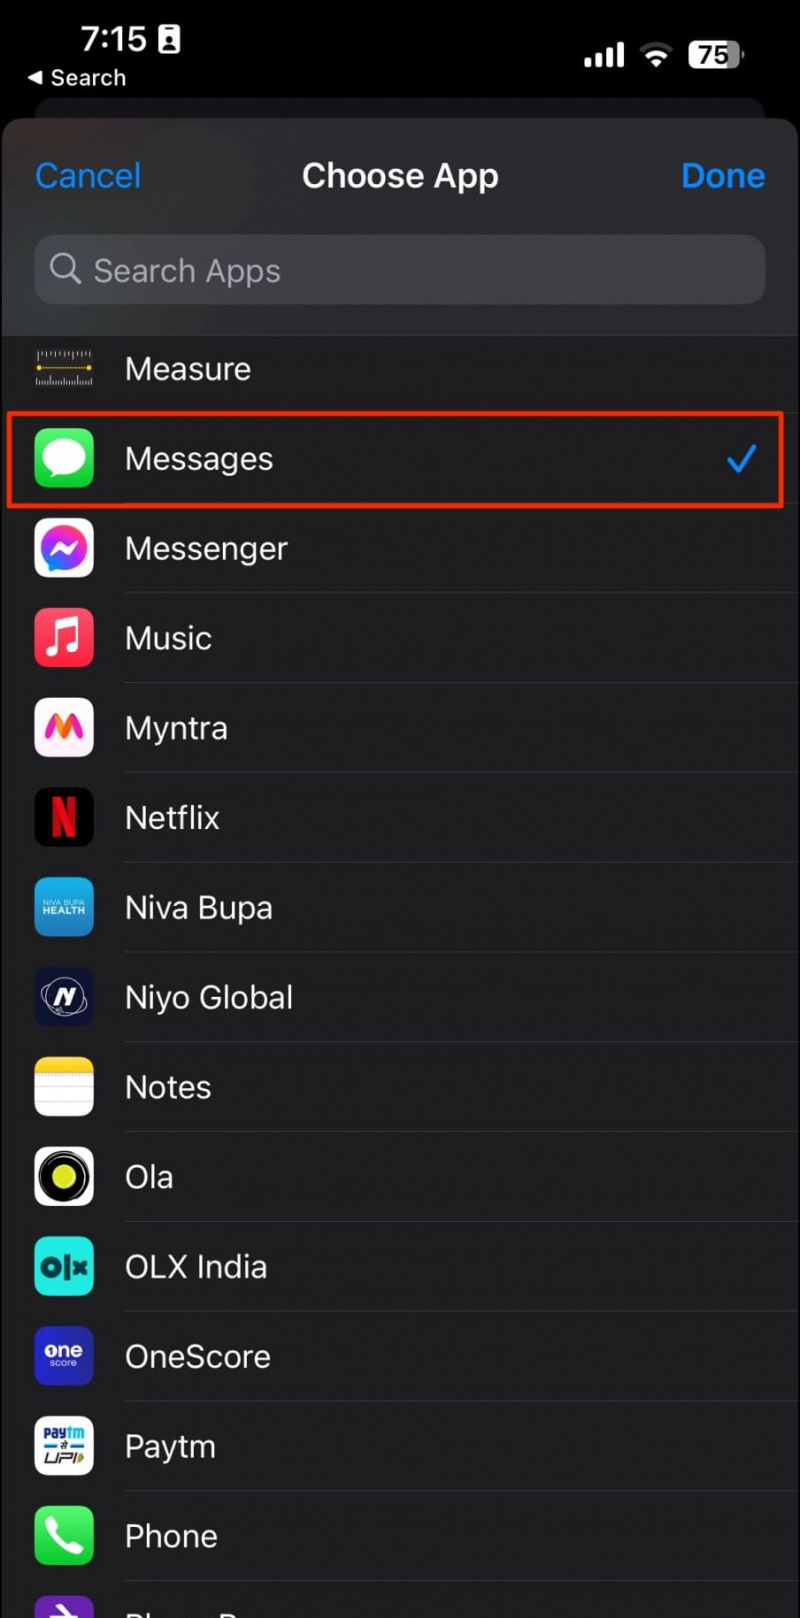   Acceso directo para bloquear mensajes en iPhone